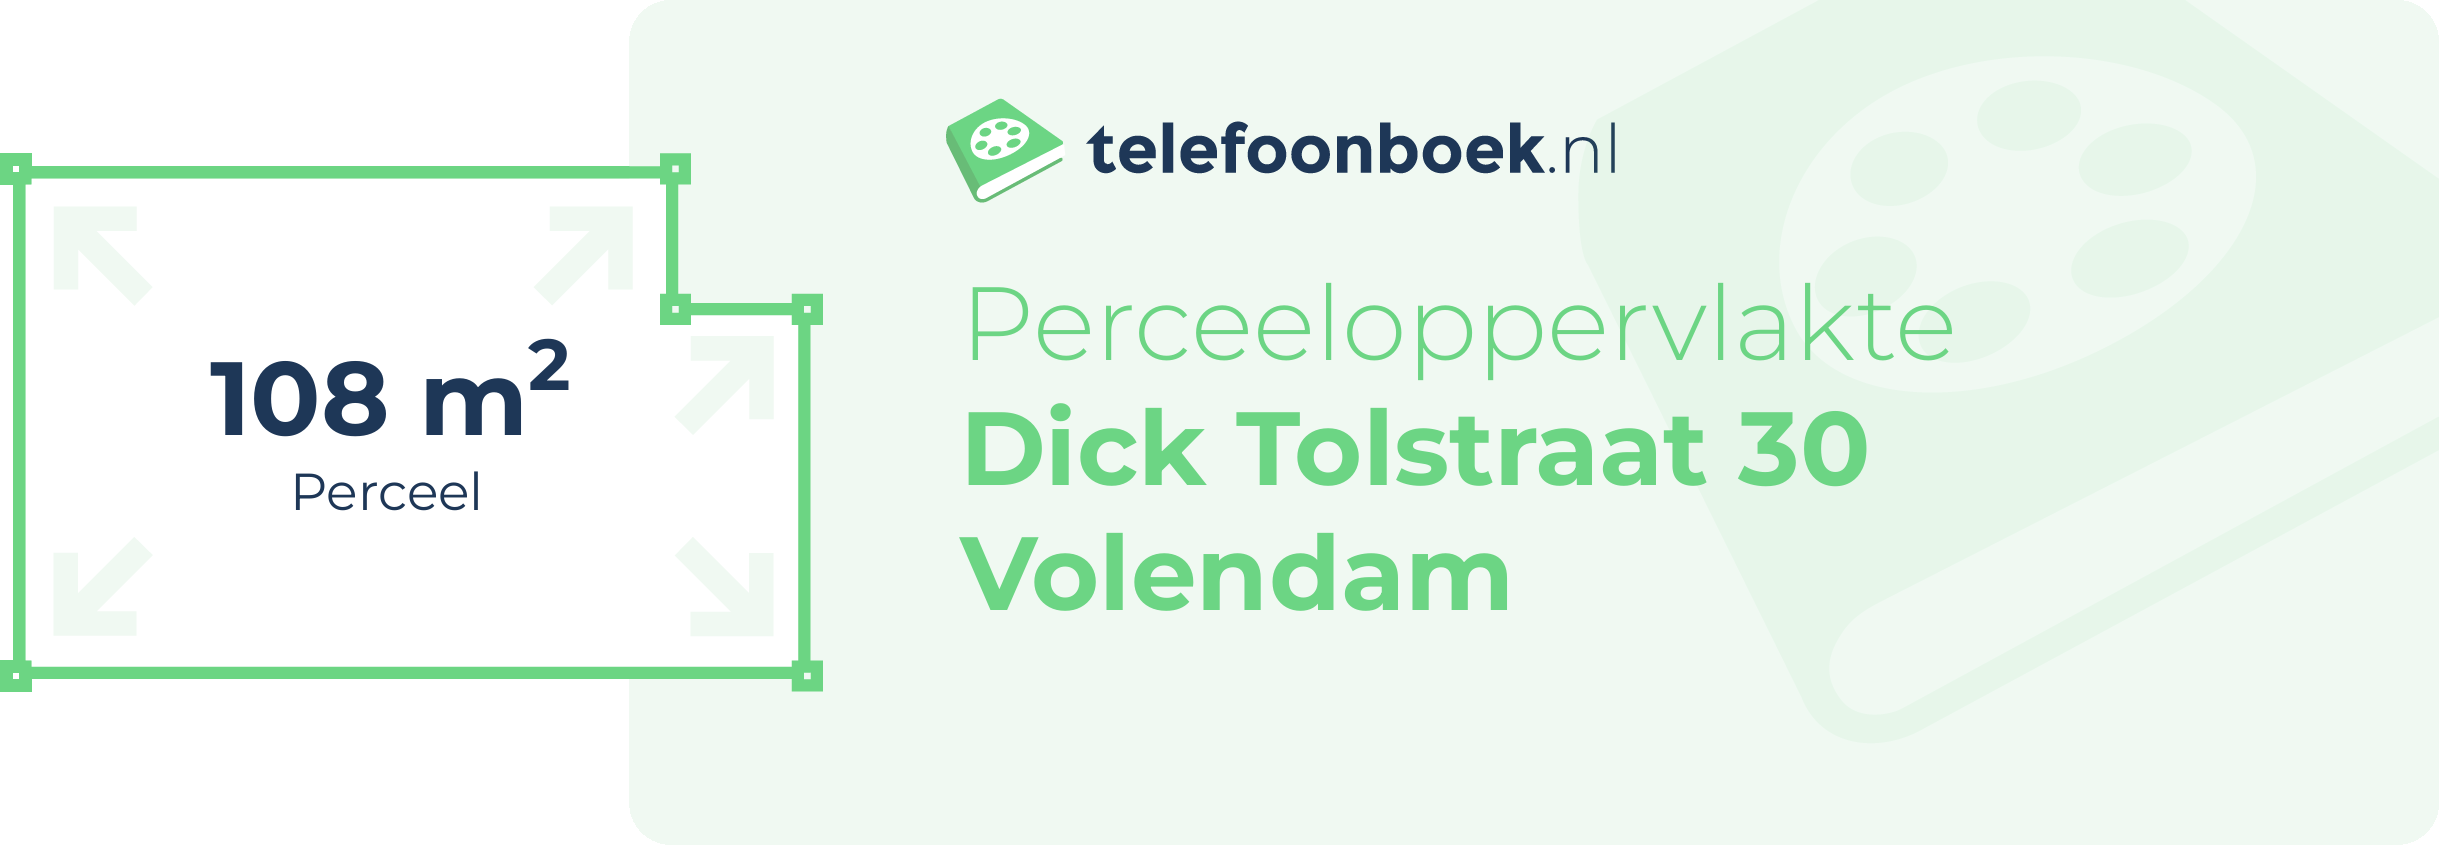 Perceeloppervlakte Dick Tolstraat 30 Volendam